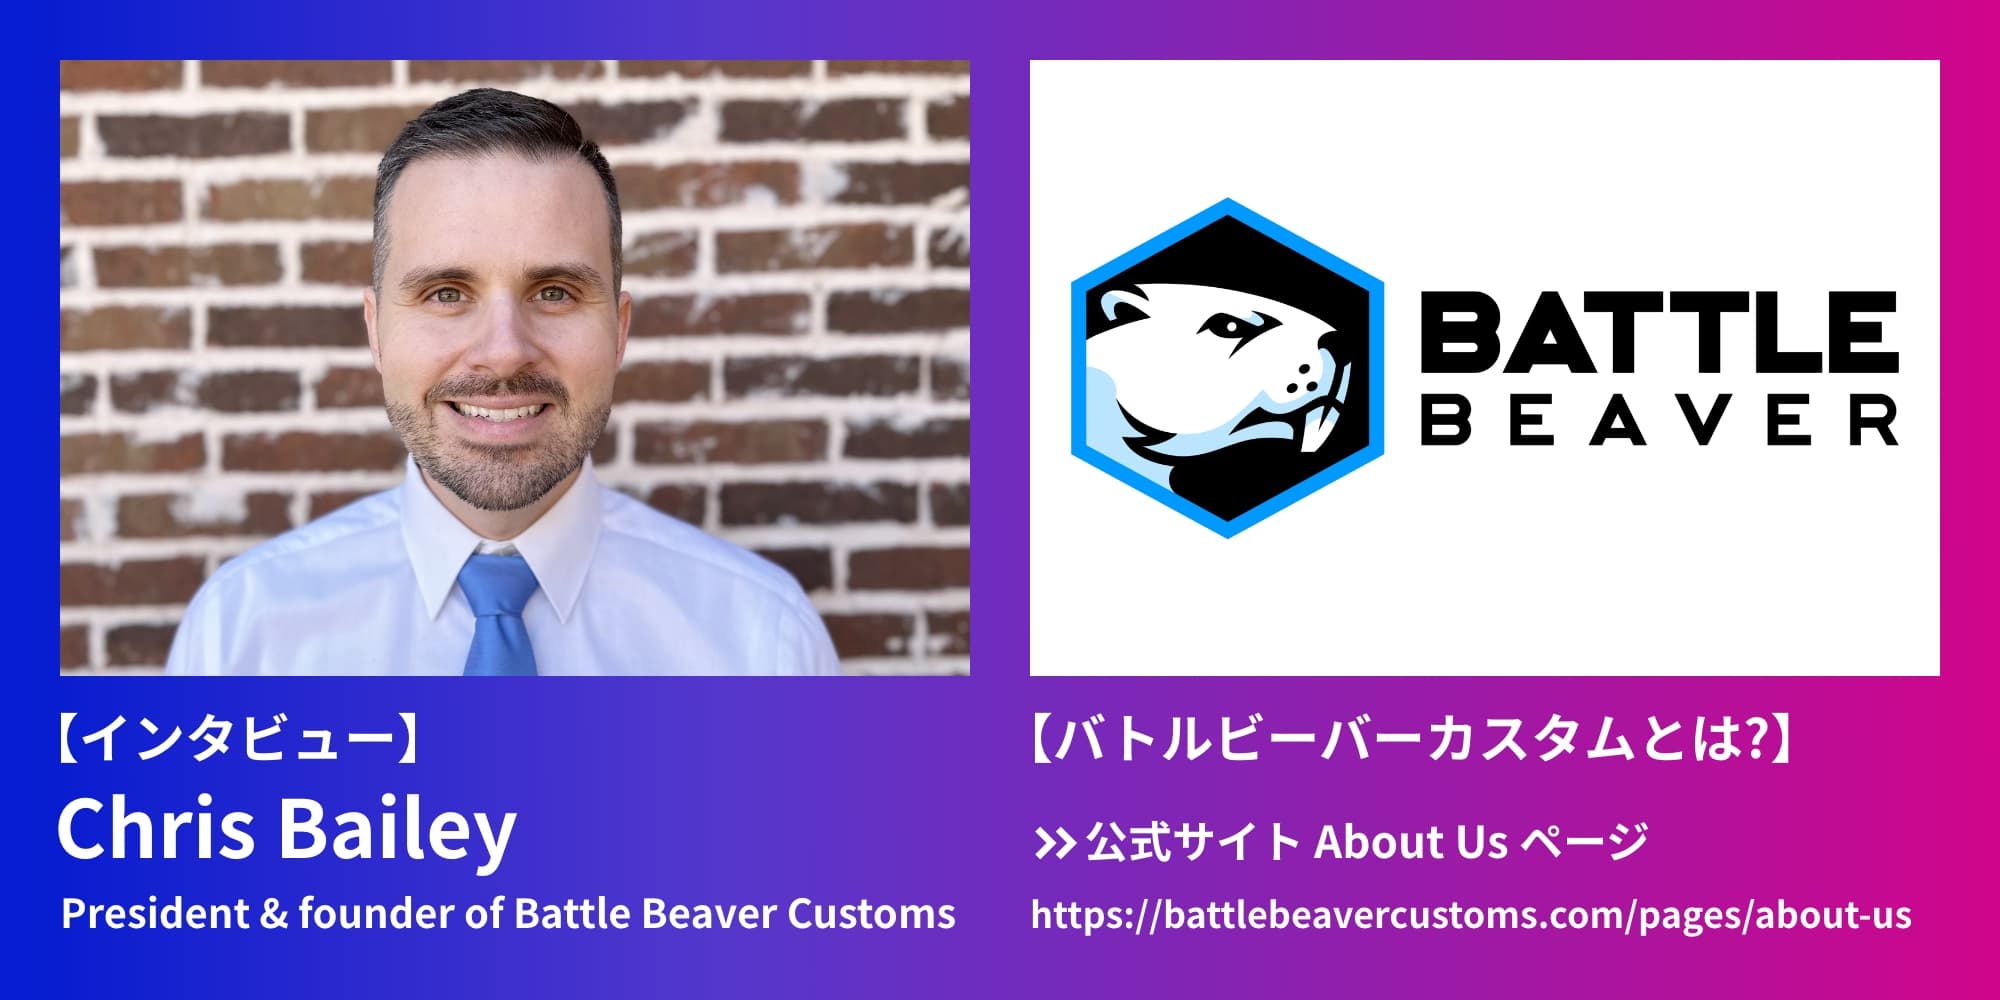 【インタビュー】Chris Bailey:President & founder of Battle Beaver Customs BATTLE BEAVER 【バトルビーバーカスタムとは?】→公式サイト About Us ページ https://battlebeavercustoms.com/pages/about-us